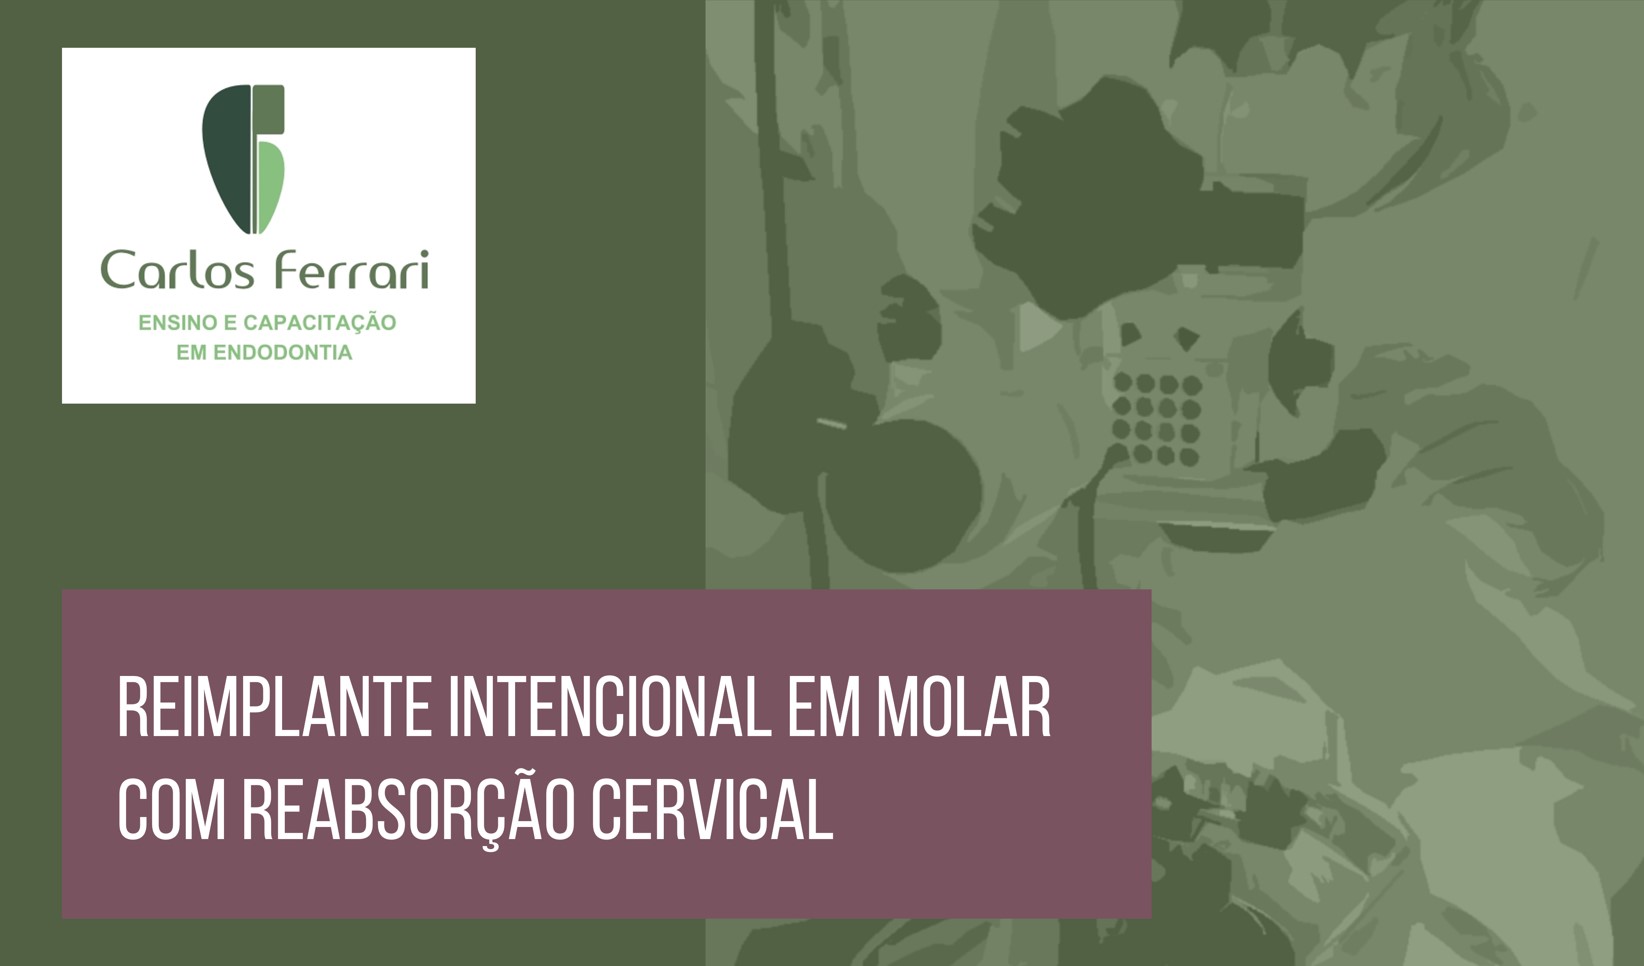 You are currently viewing Reabsorção radicular. Reimplante Intencional em reabsorção cervical.